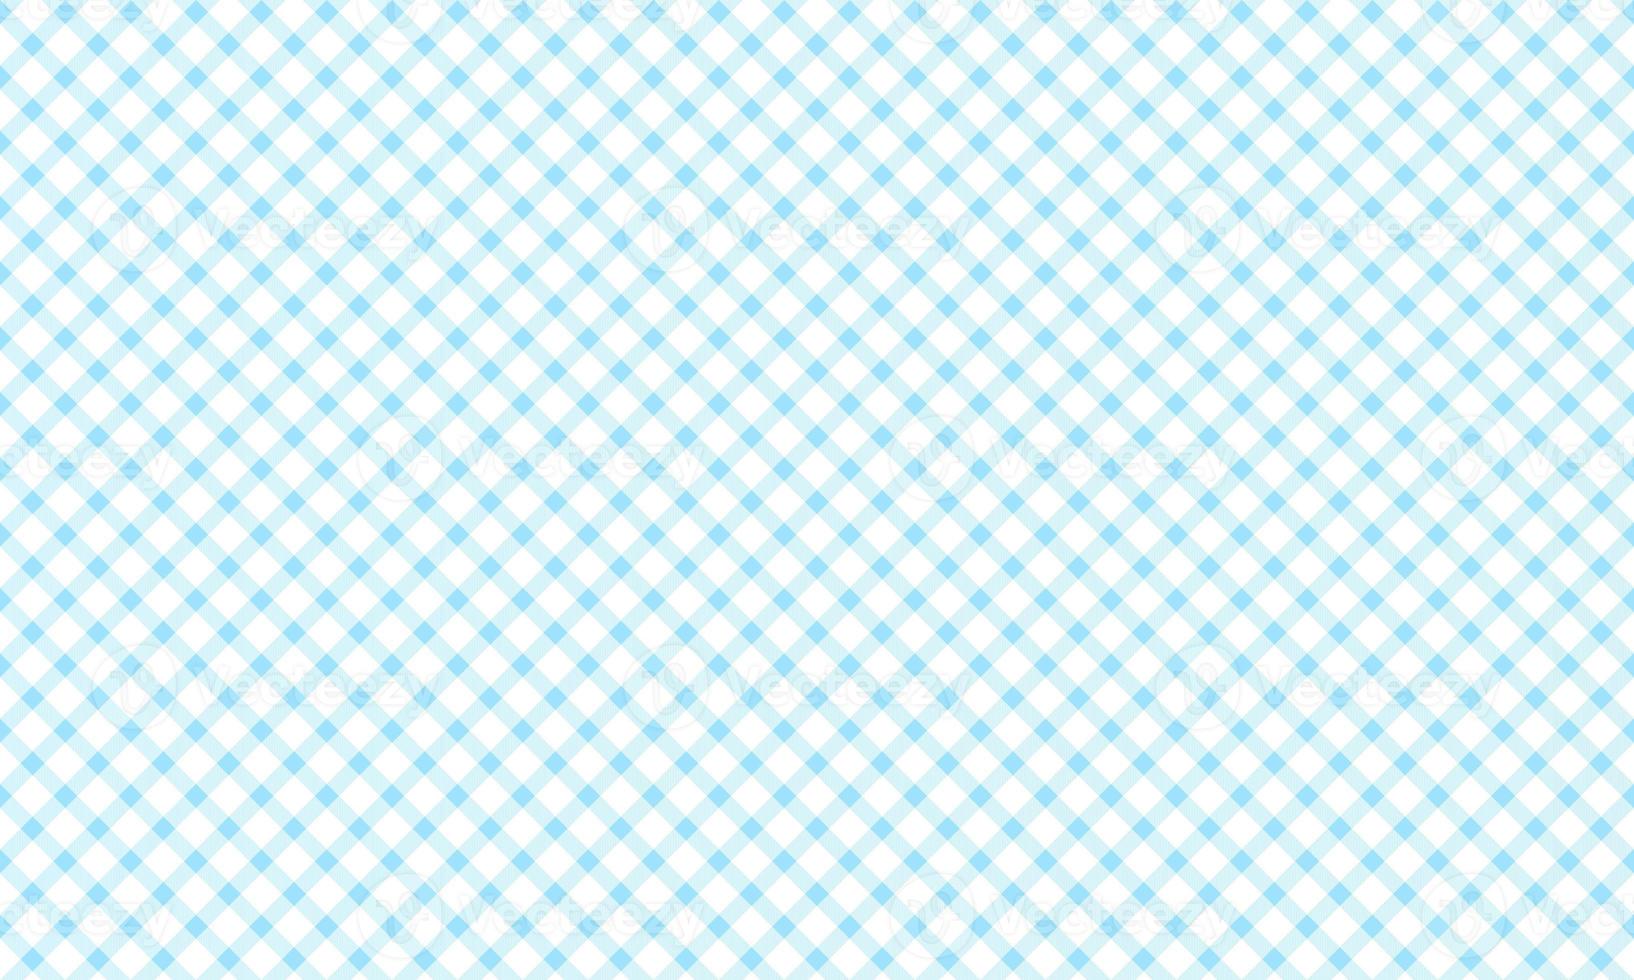 turquesa azul desatado xadrez padronizar foto